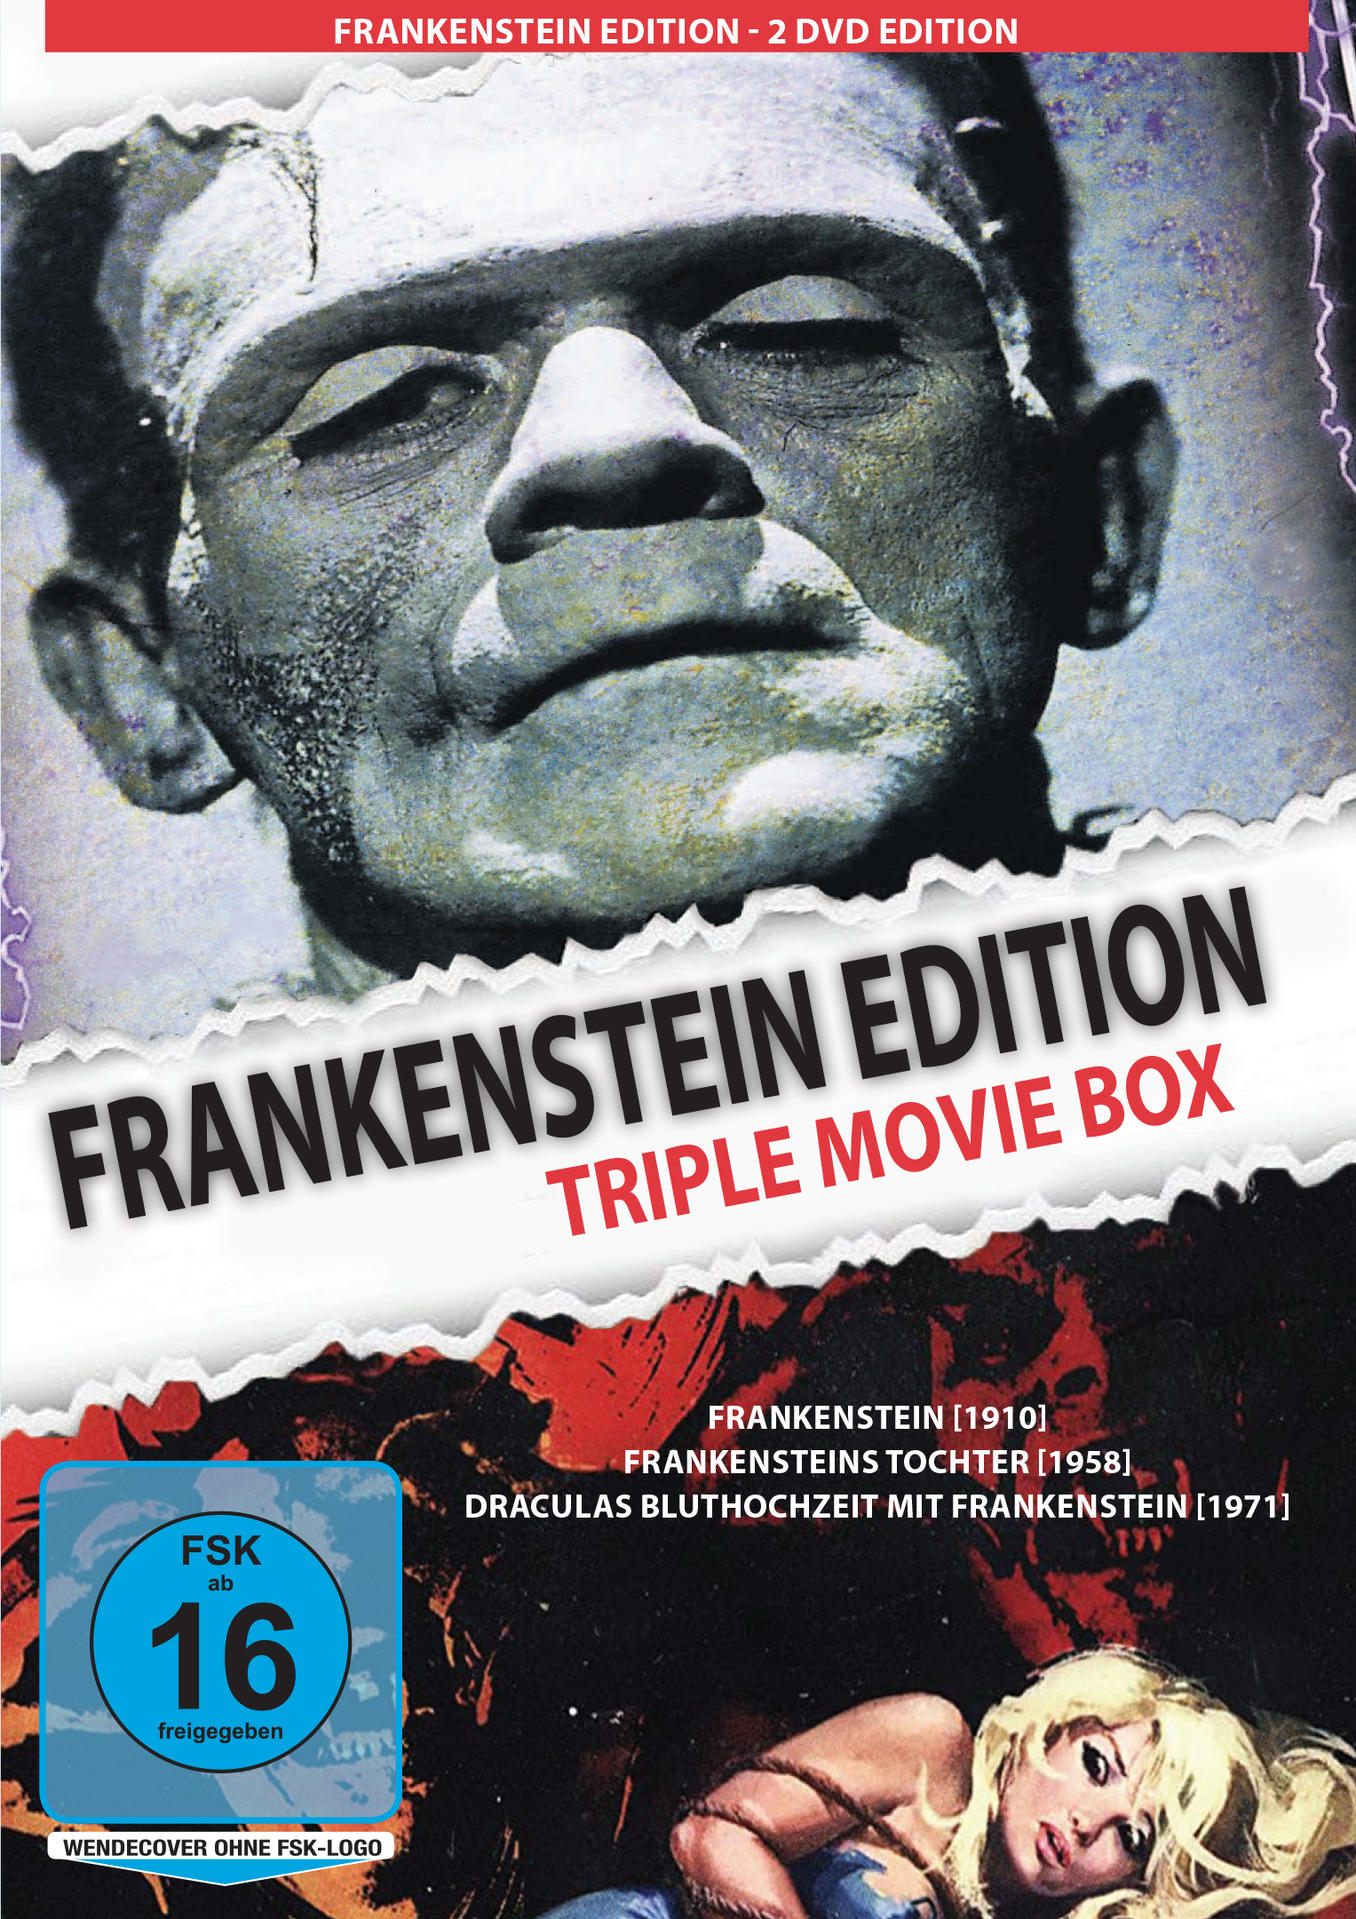 FRANKENSTEIN EDITION (TRIPLE DVD MOVIE BOX)